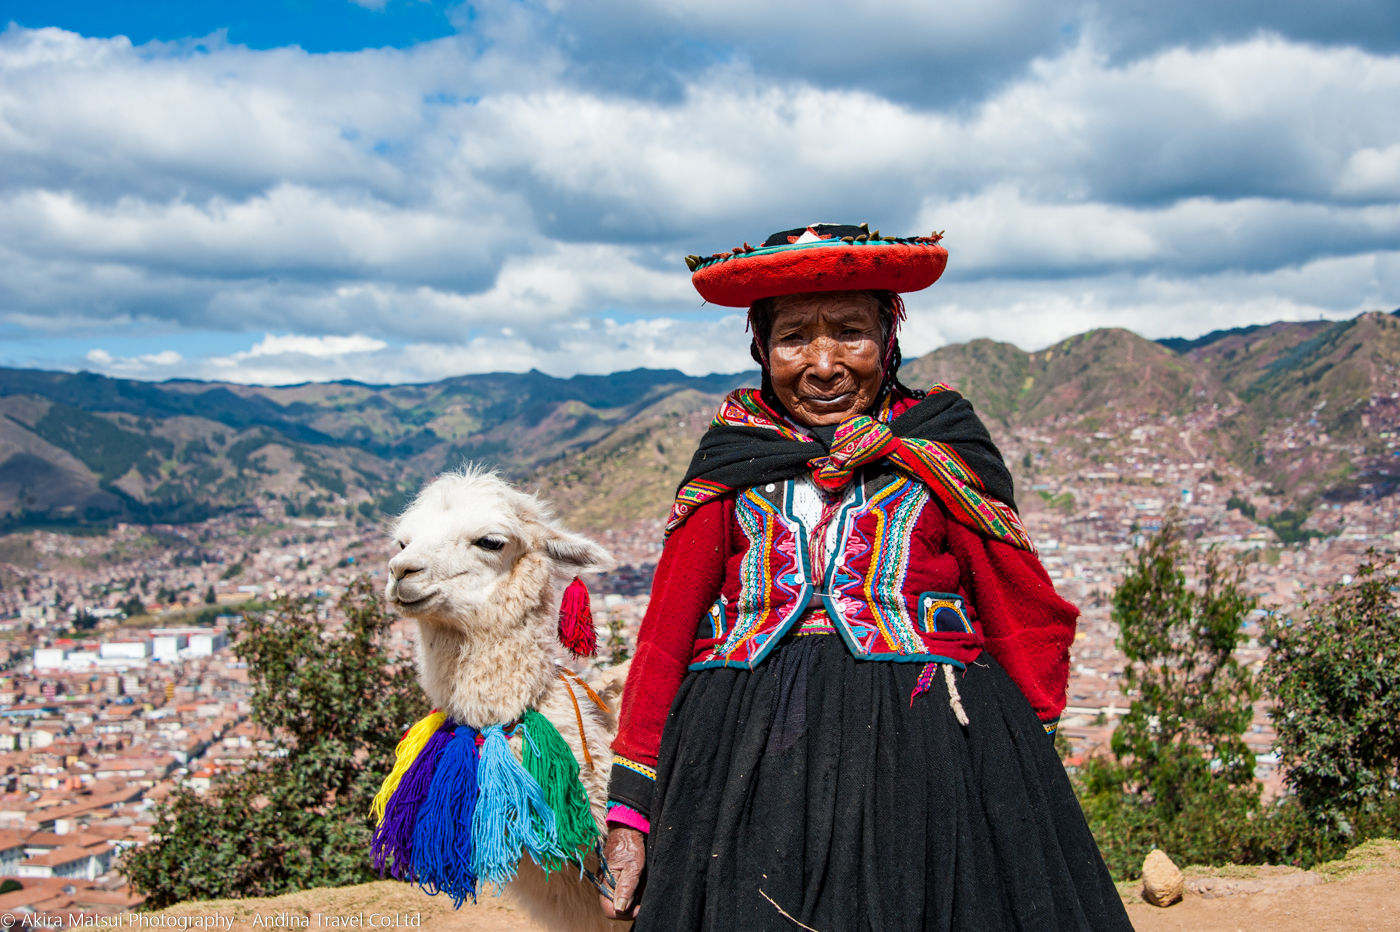 ペルー アンデス山脈 南米大陸の幻想風景 写真展 撮影エリア紹介 写真家 松井章 アンディーナ ブログ